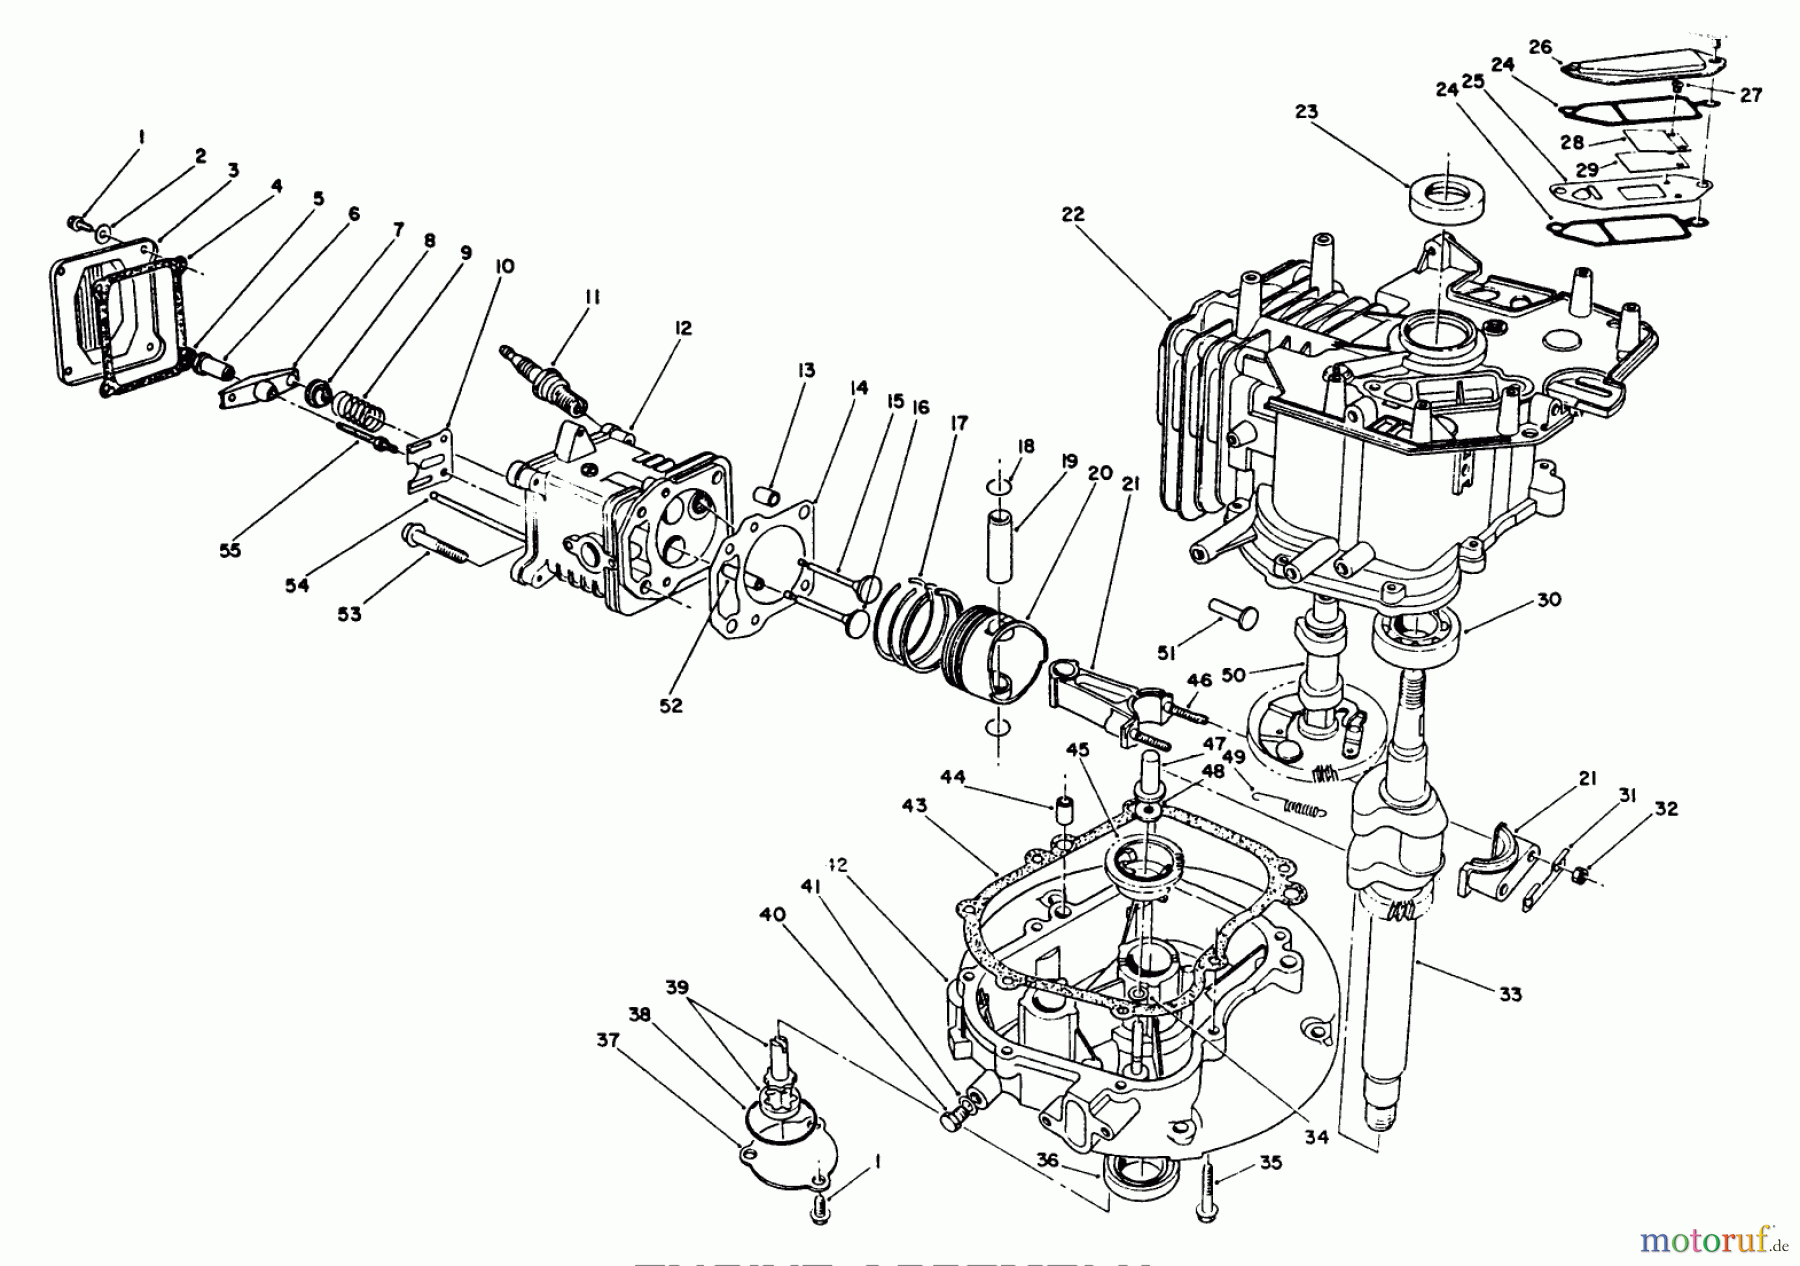  Toro Neu Mowers, Walk-Behind Seite 1 20622 - Toro Lawnmower, 1990 (0003102-0999999) ENGINE ASSEMBLY (MODEL NO. VMK9-2)